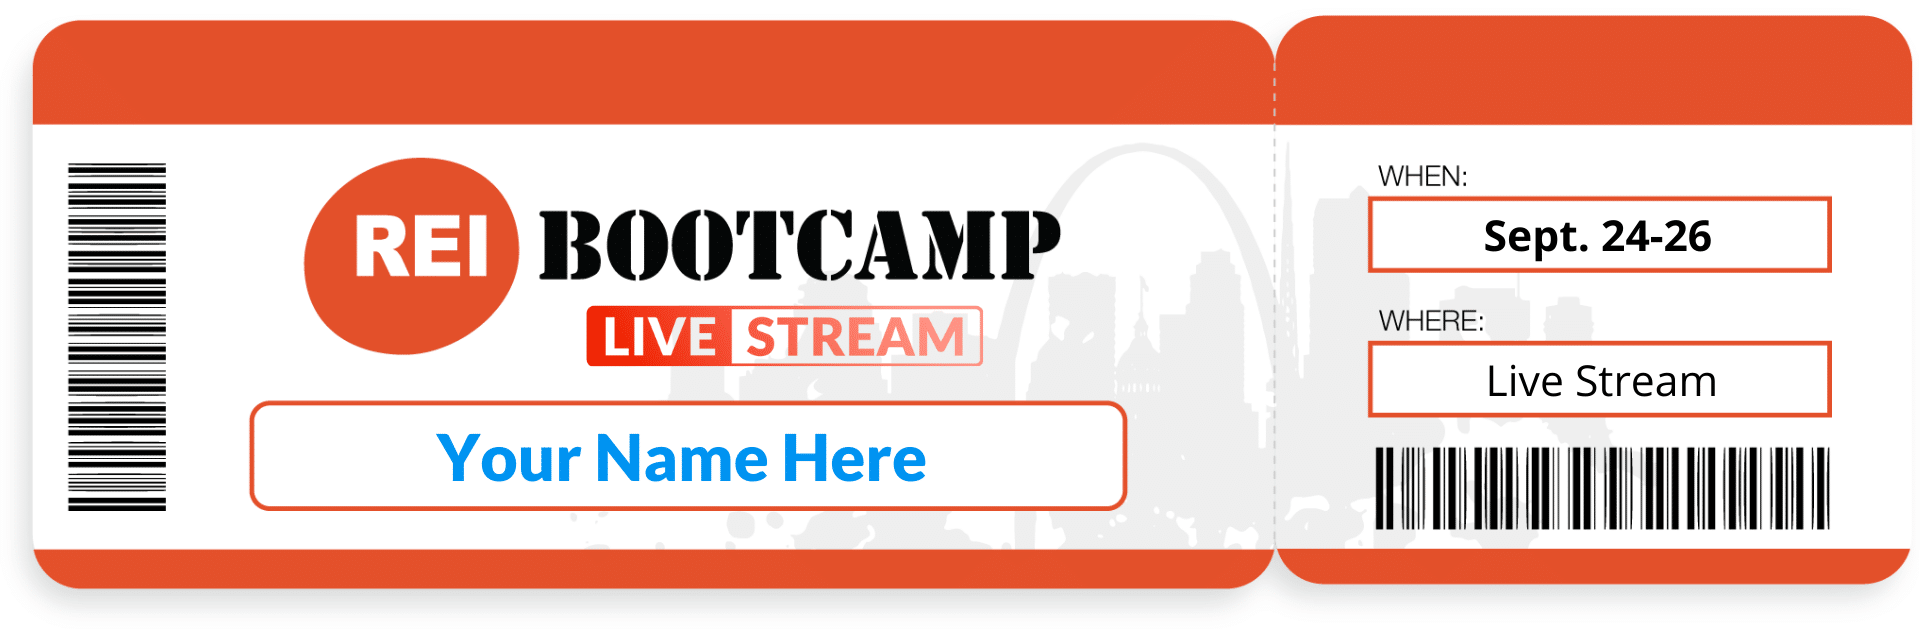 REI Bootcamp Ticket